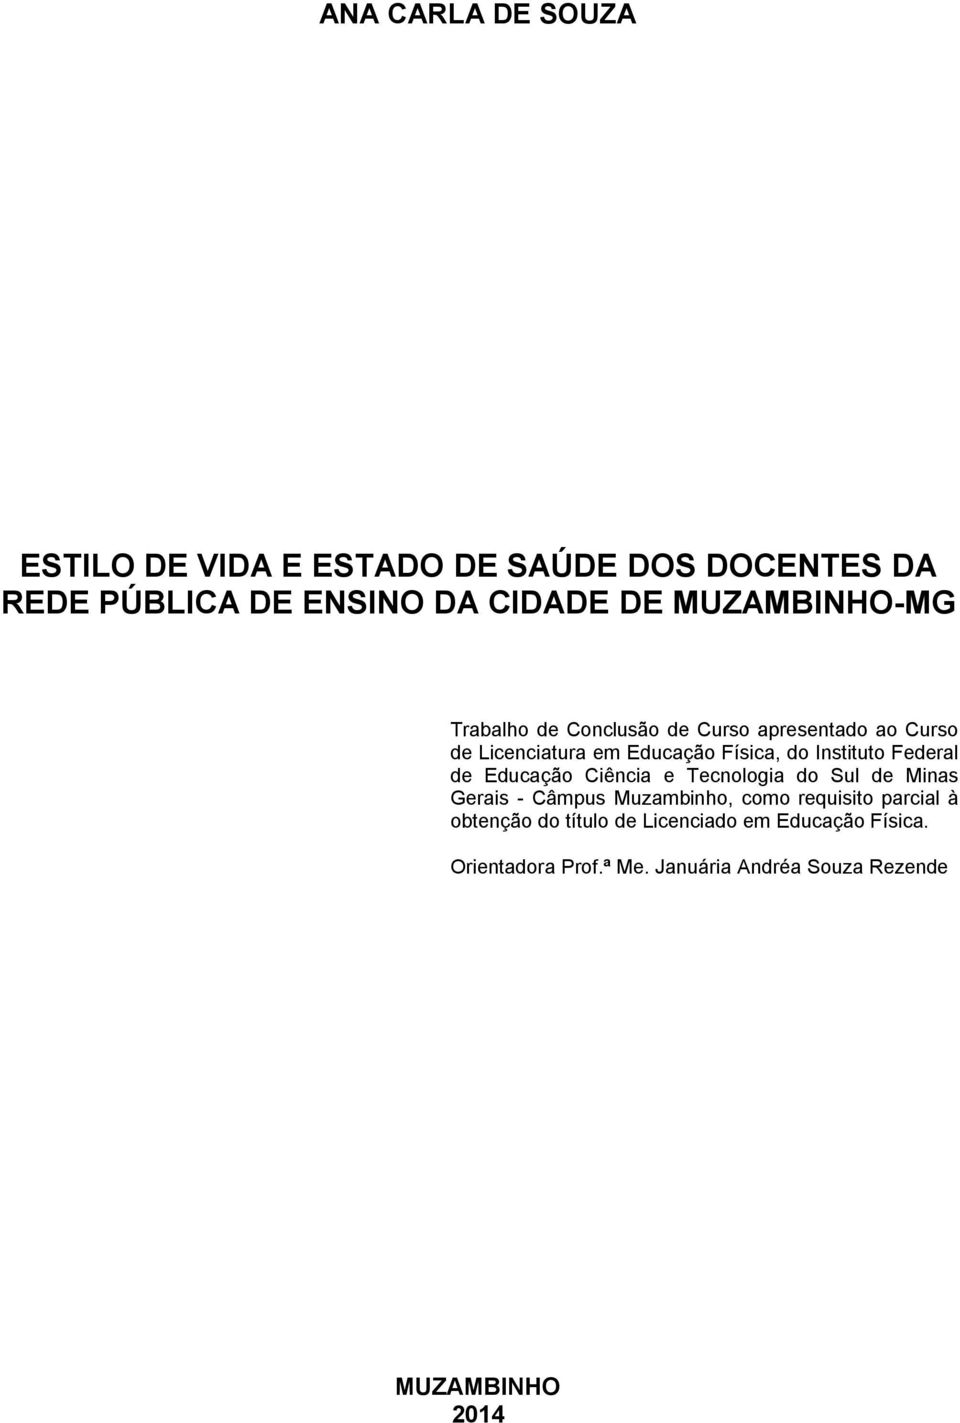 Instituto Federal de Educação Ciência e Tecnologia do Sul de Minas Gerais - Câmpus Muzambinho, como requisito